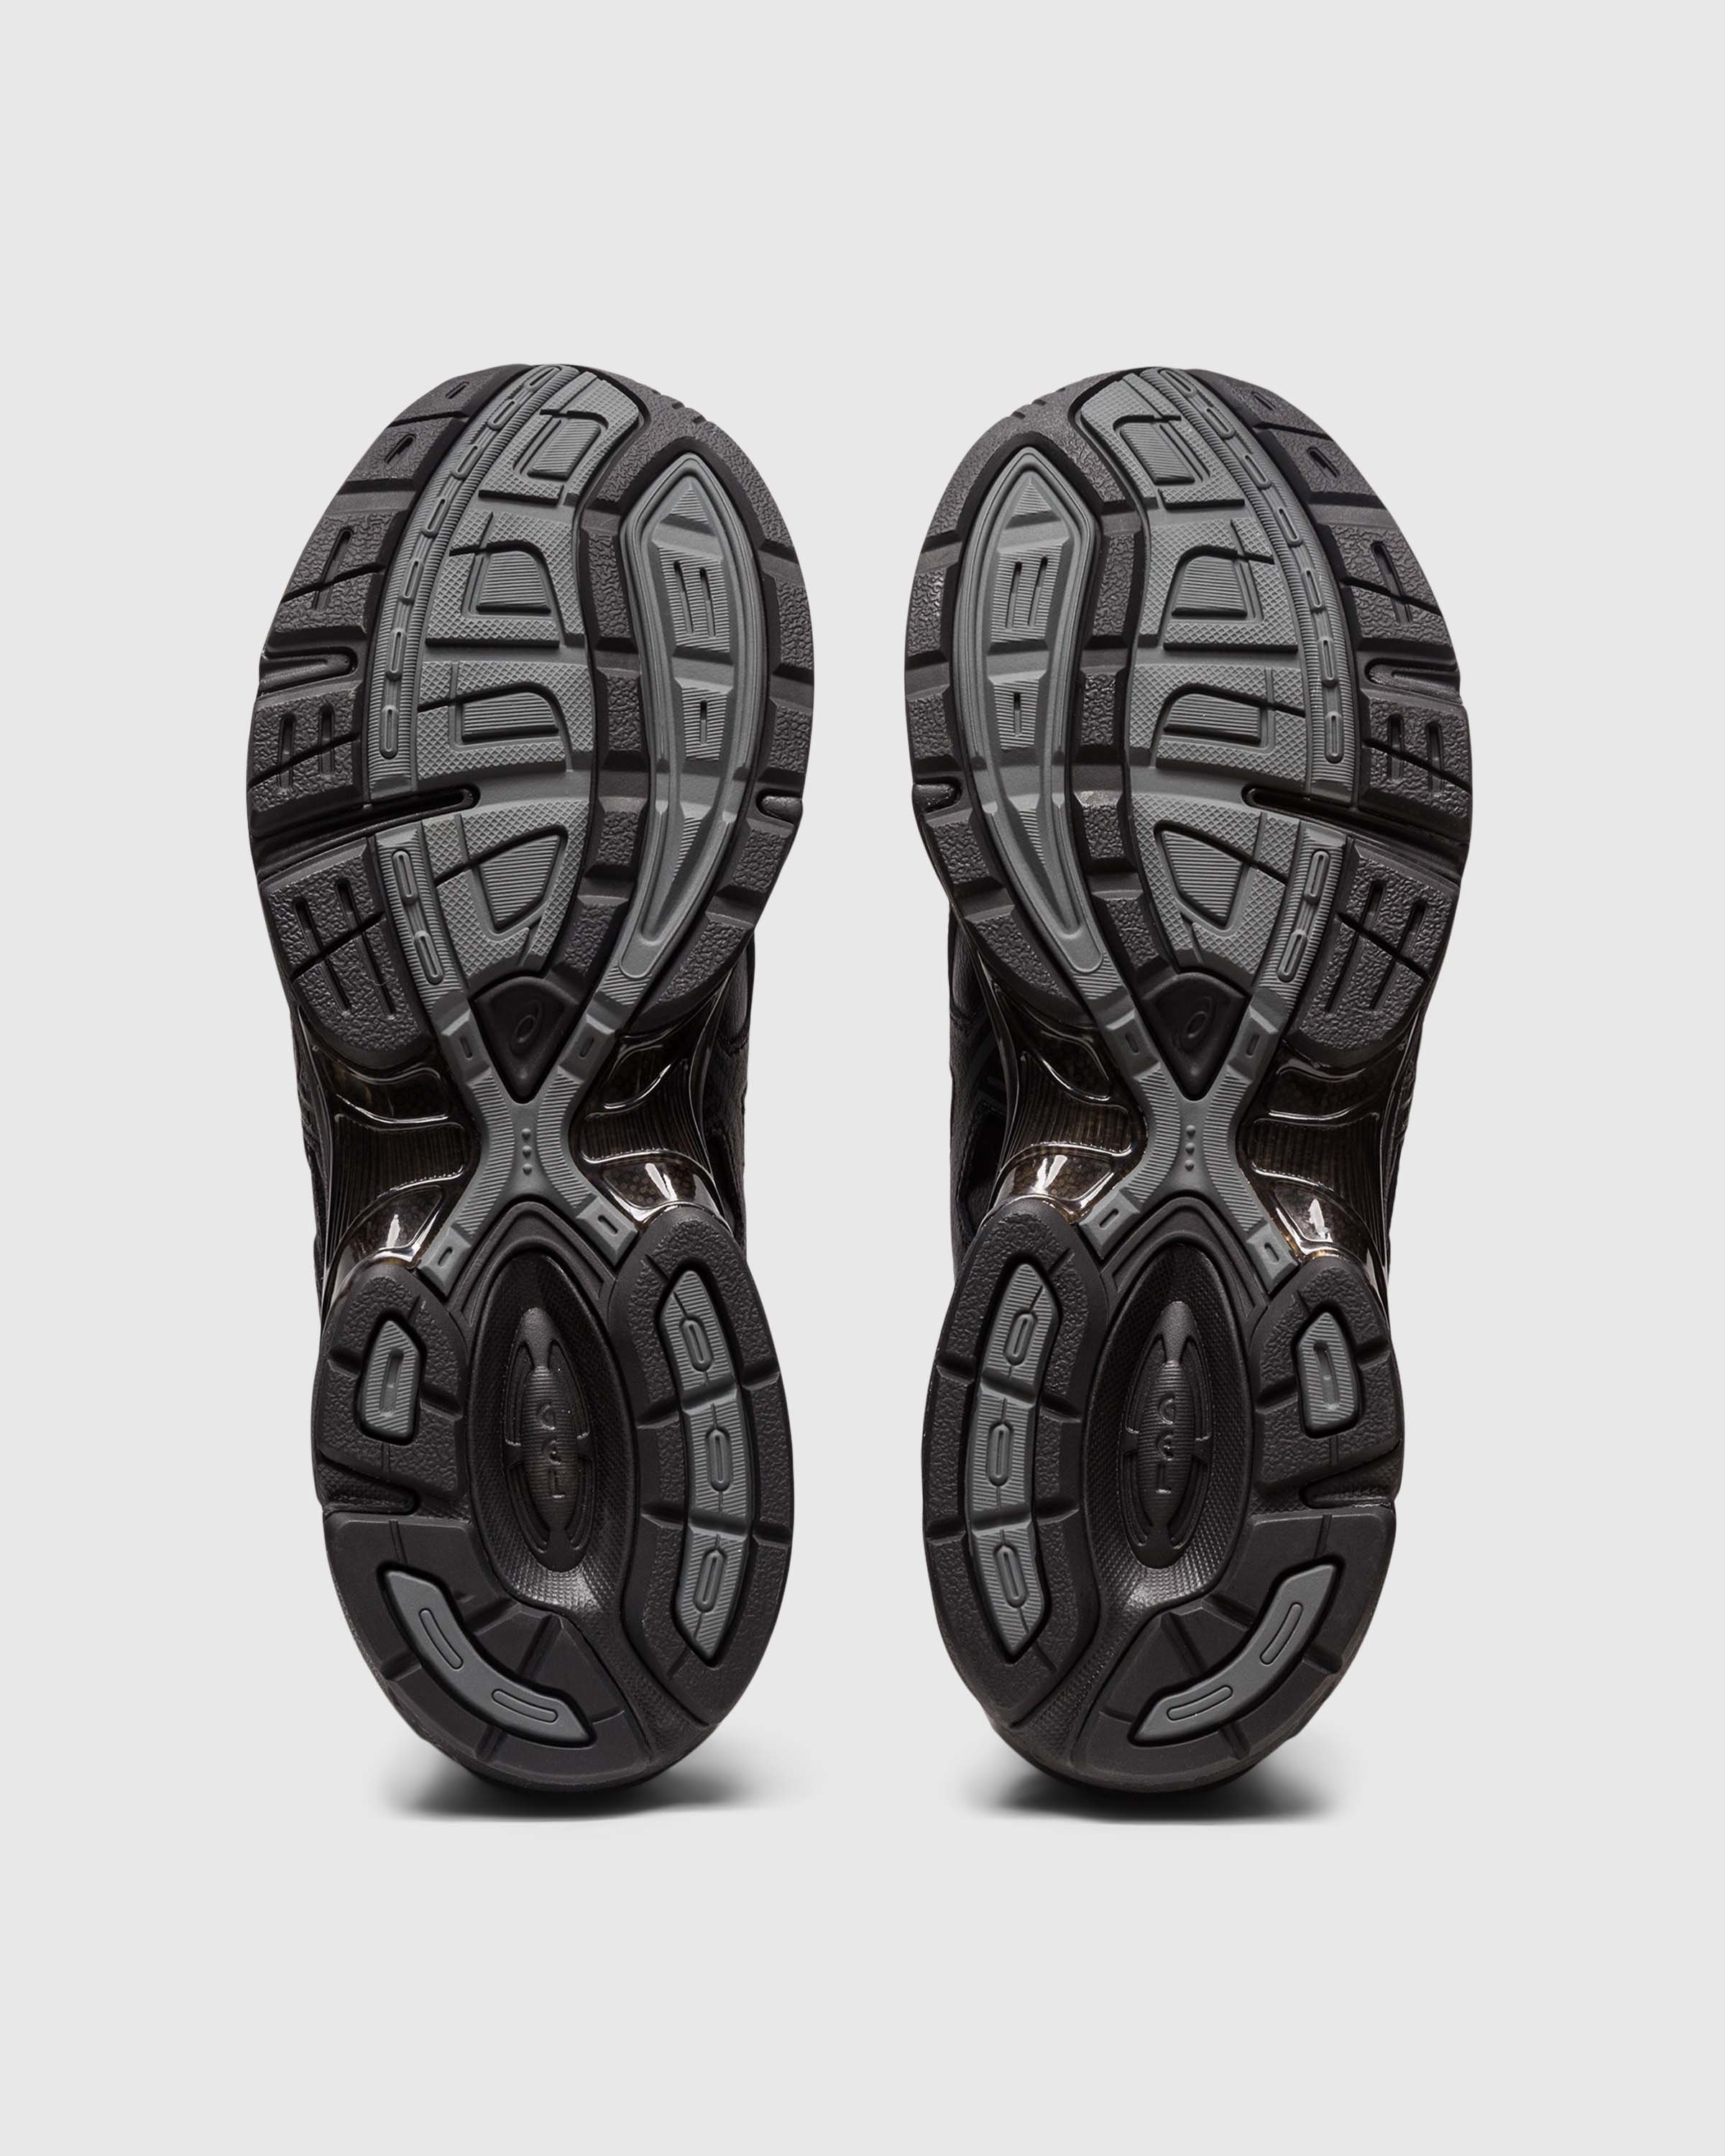 asics - GEL-1130 Black - Footwear - Black - Image 6